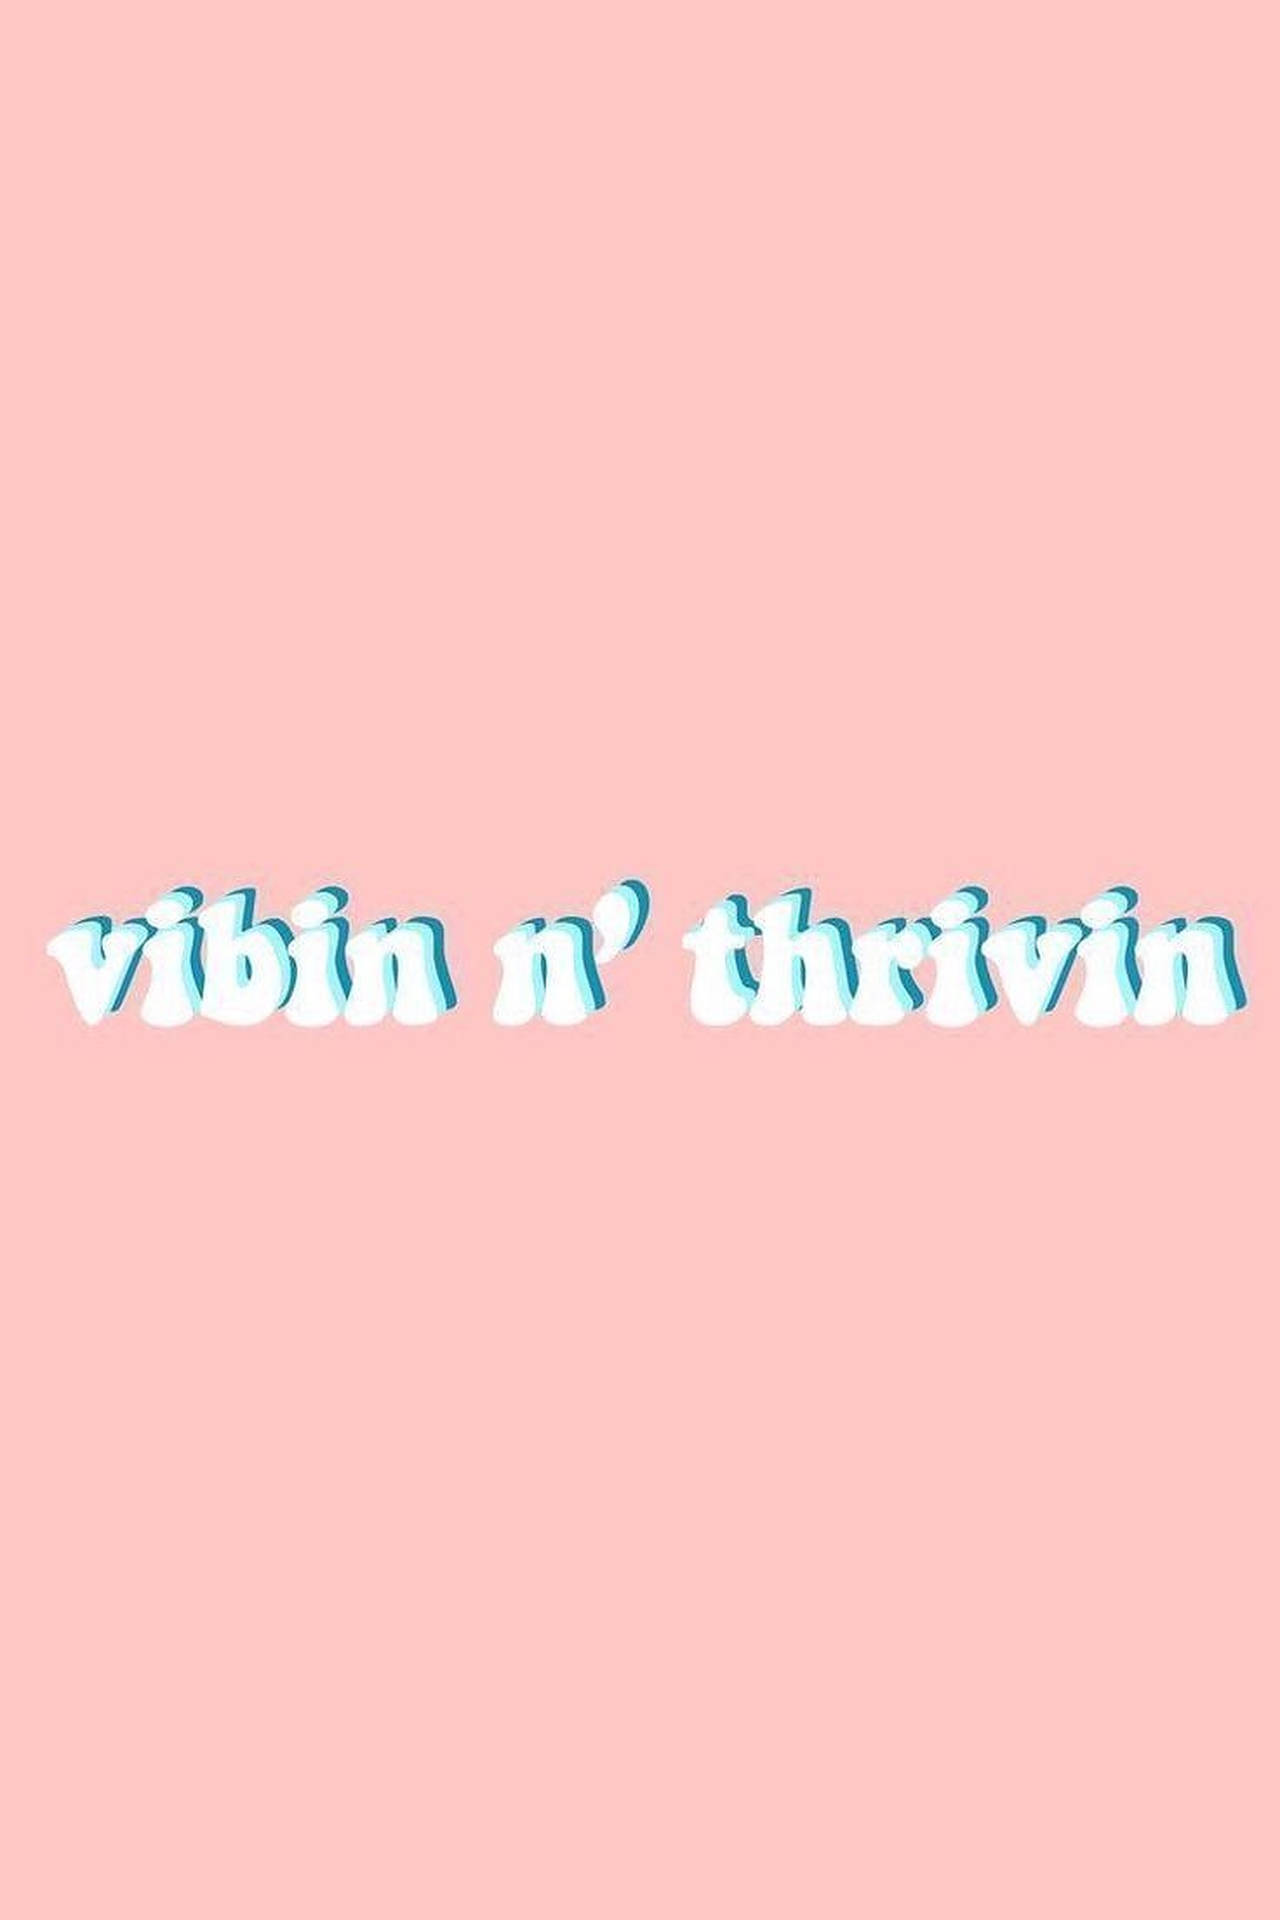 Download Vibin Aesthetic Words Wallpaper 